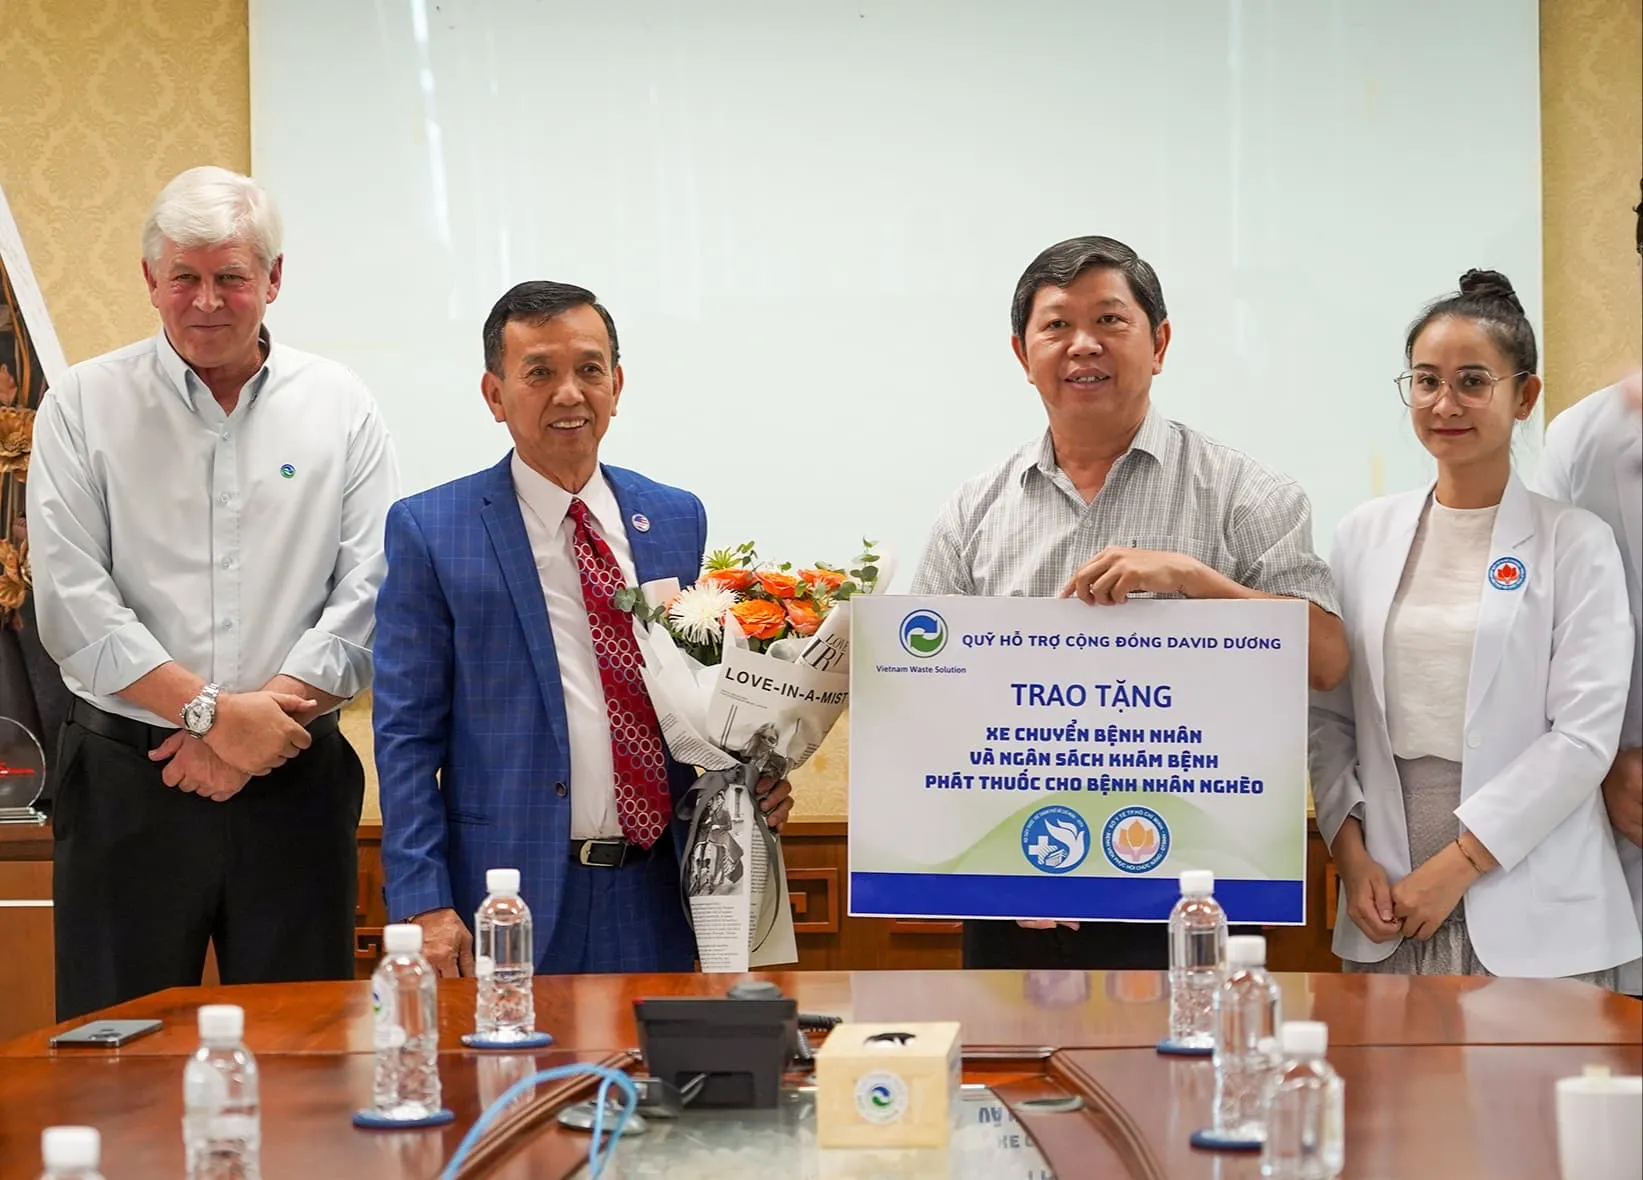 Quỹ Hỗ trợ Cộng đồng David Dương tổ chức hoạt động trao tặng xe chuyển bệnh nội bộ và ngân sách tổ chức hoạt động thăm và phát thuốc cho bệnh nhân nghèo